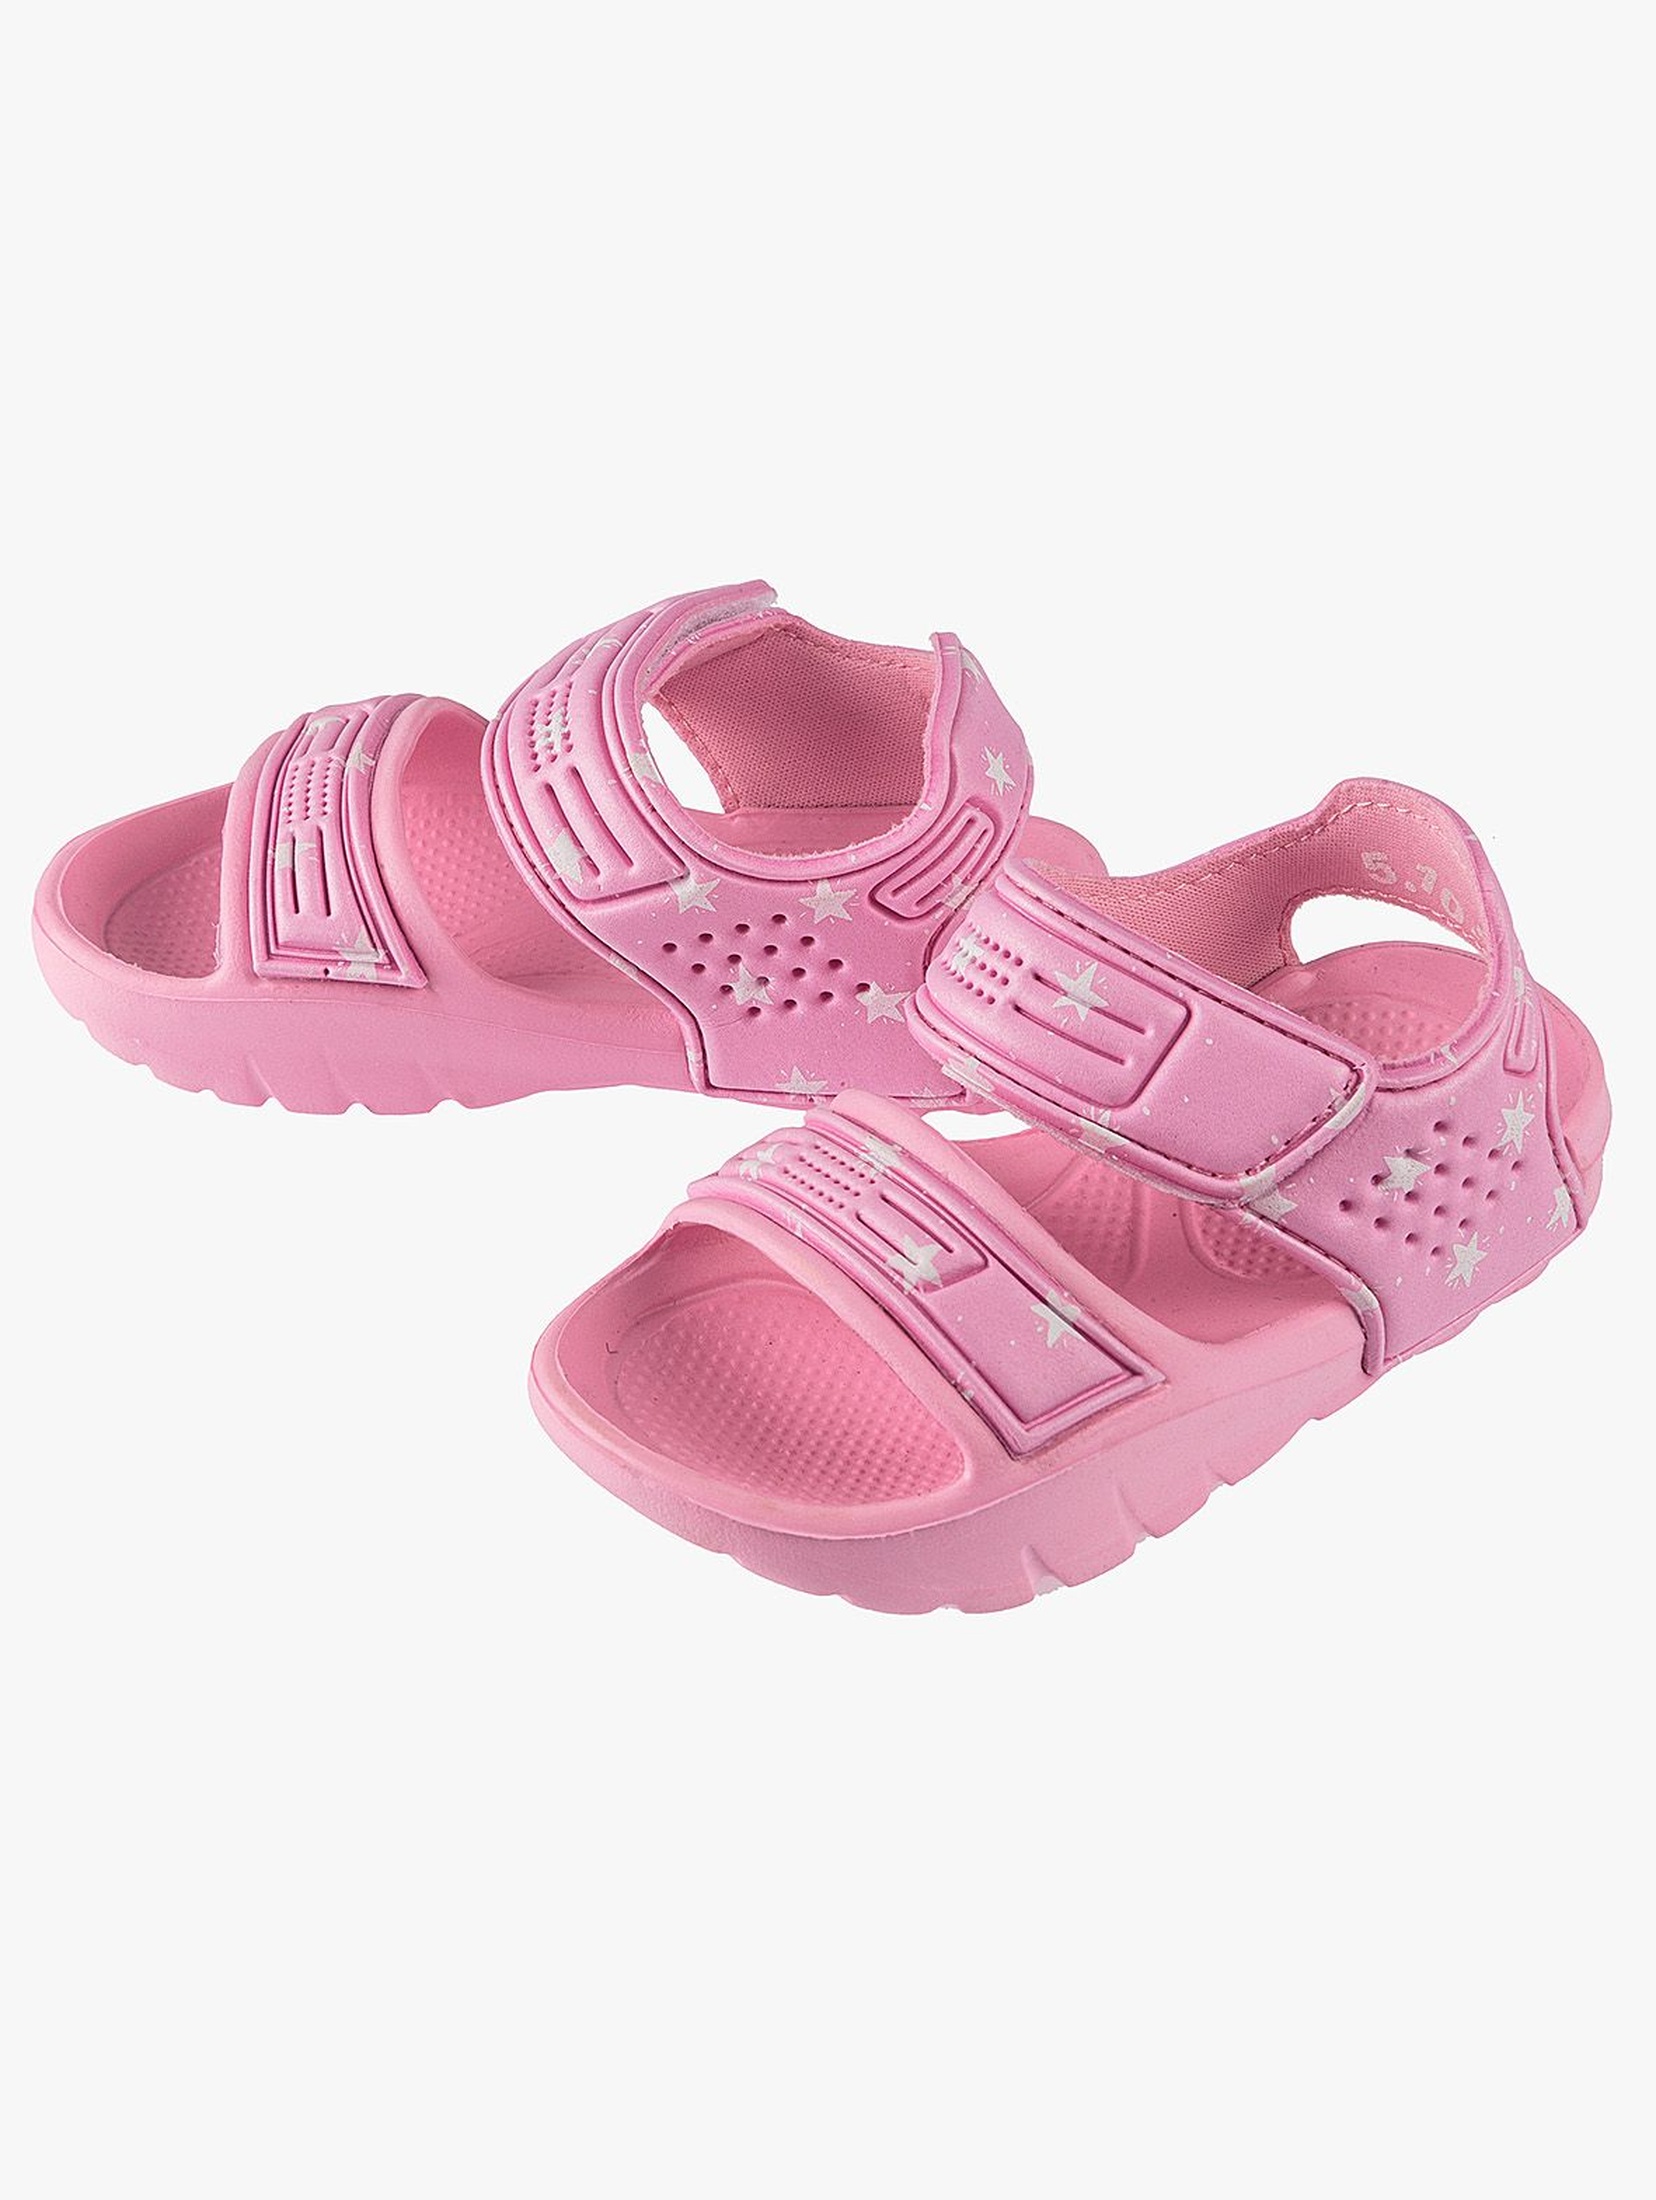 Sandały dla dziewczynki - różowe w białe gwiazdki